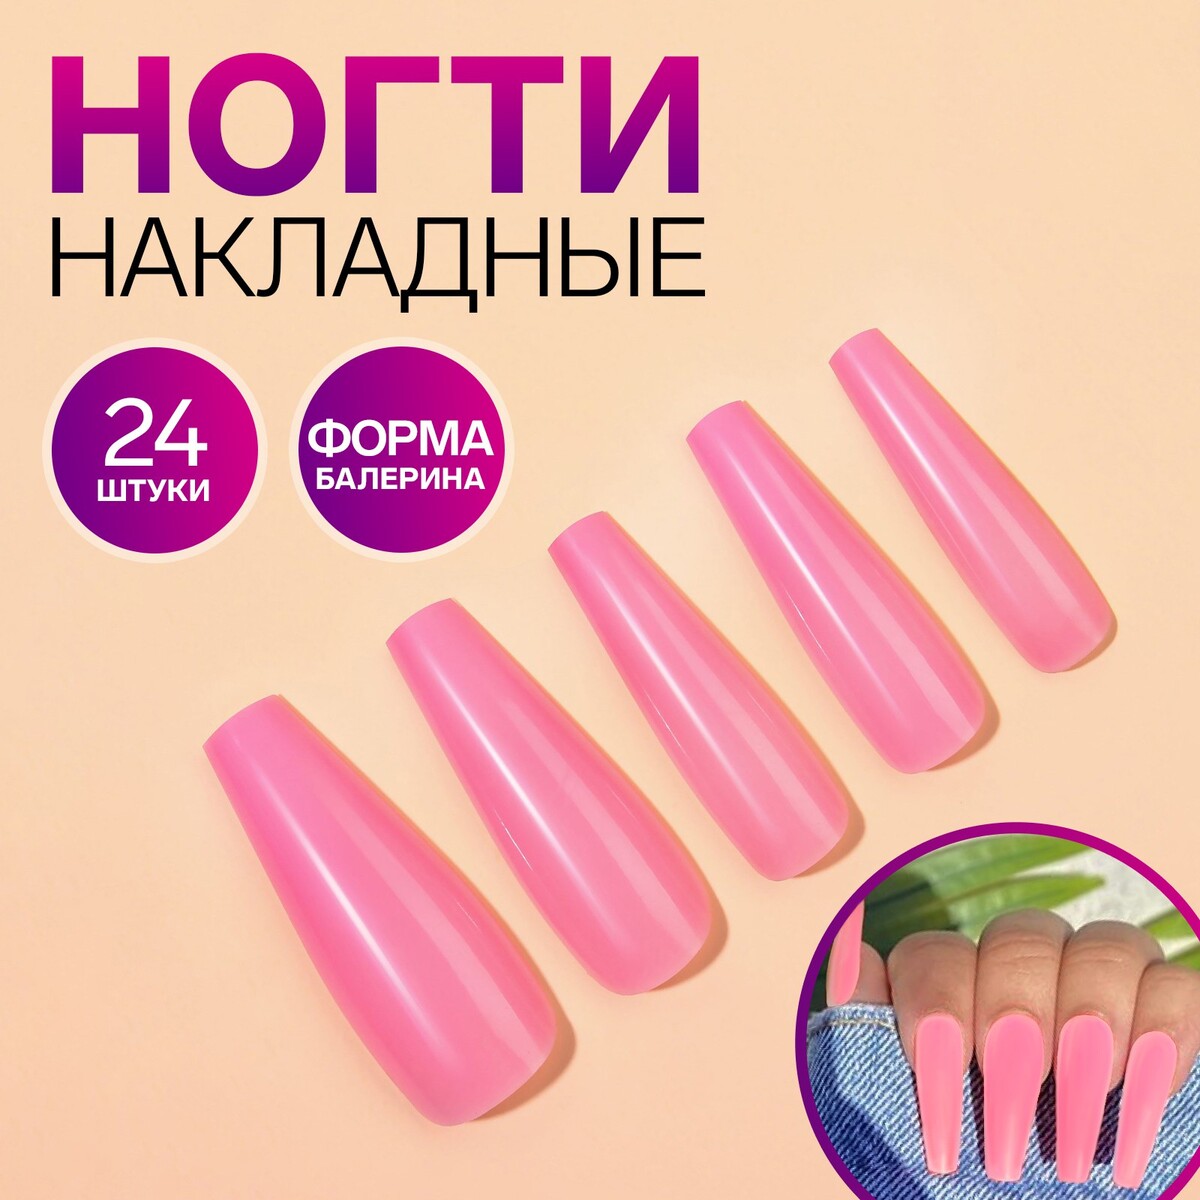 Накладные ногти, 24 шт, форма балерина, цвет нежно-розовый балерина